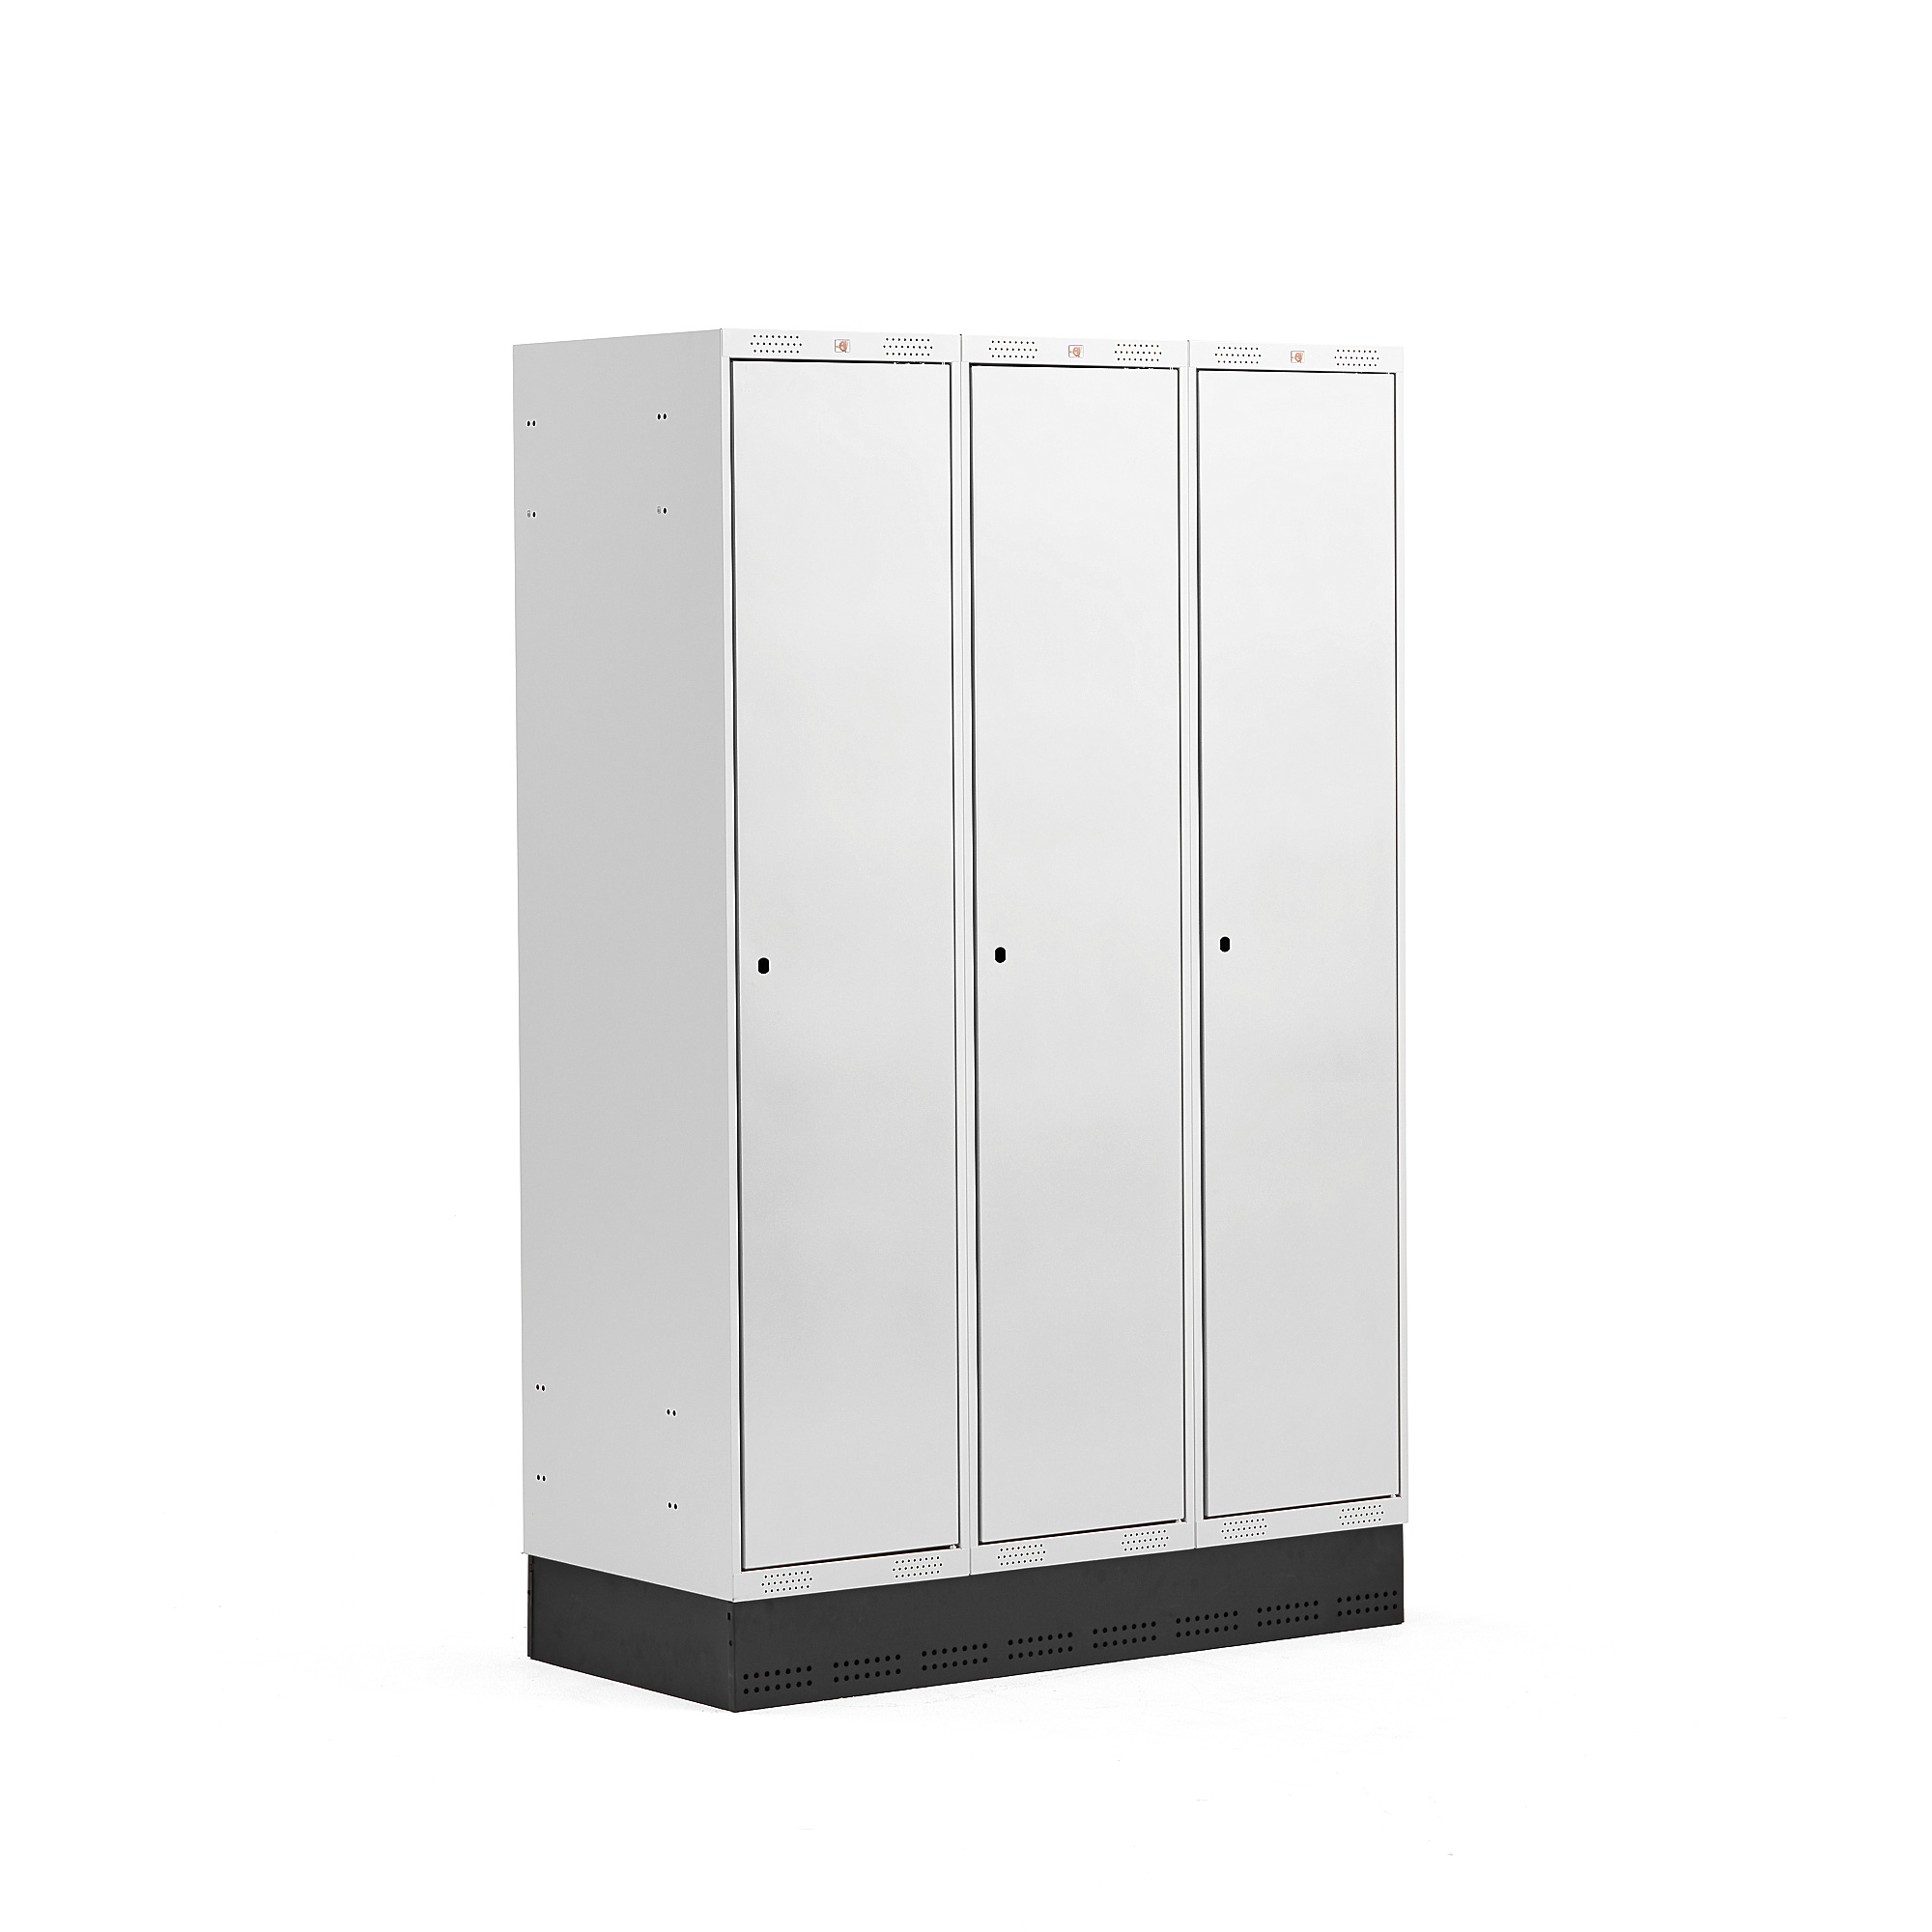 Šatní skříňka CLASSIC, se soklem, 3 sekce, 1890x1200x550 mm, šedé dveře